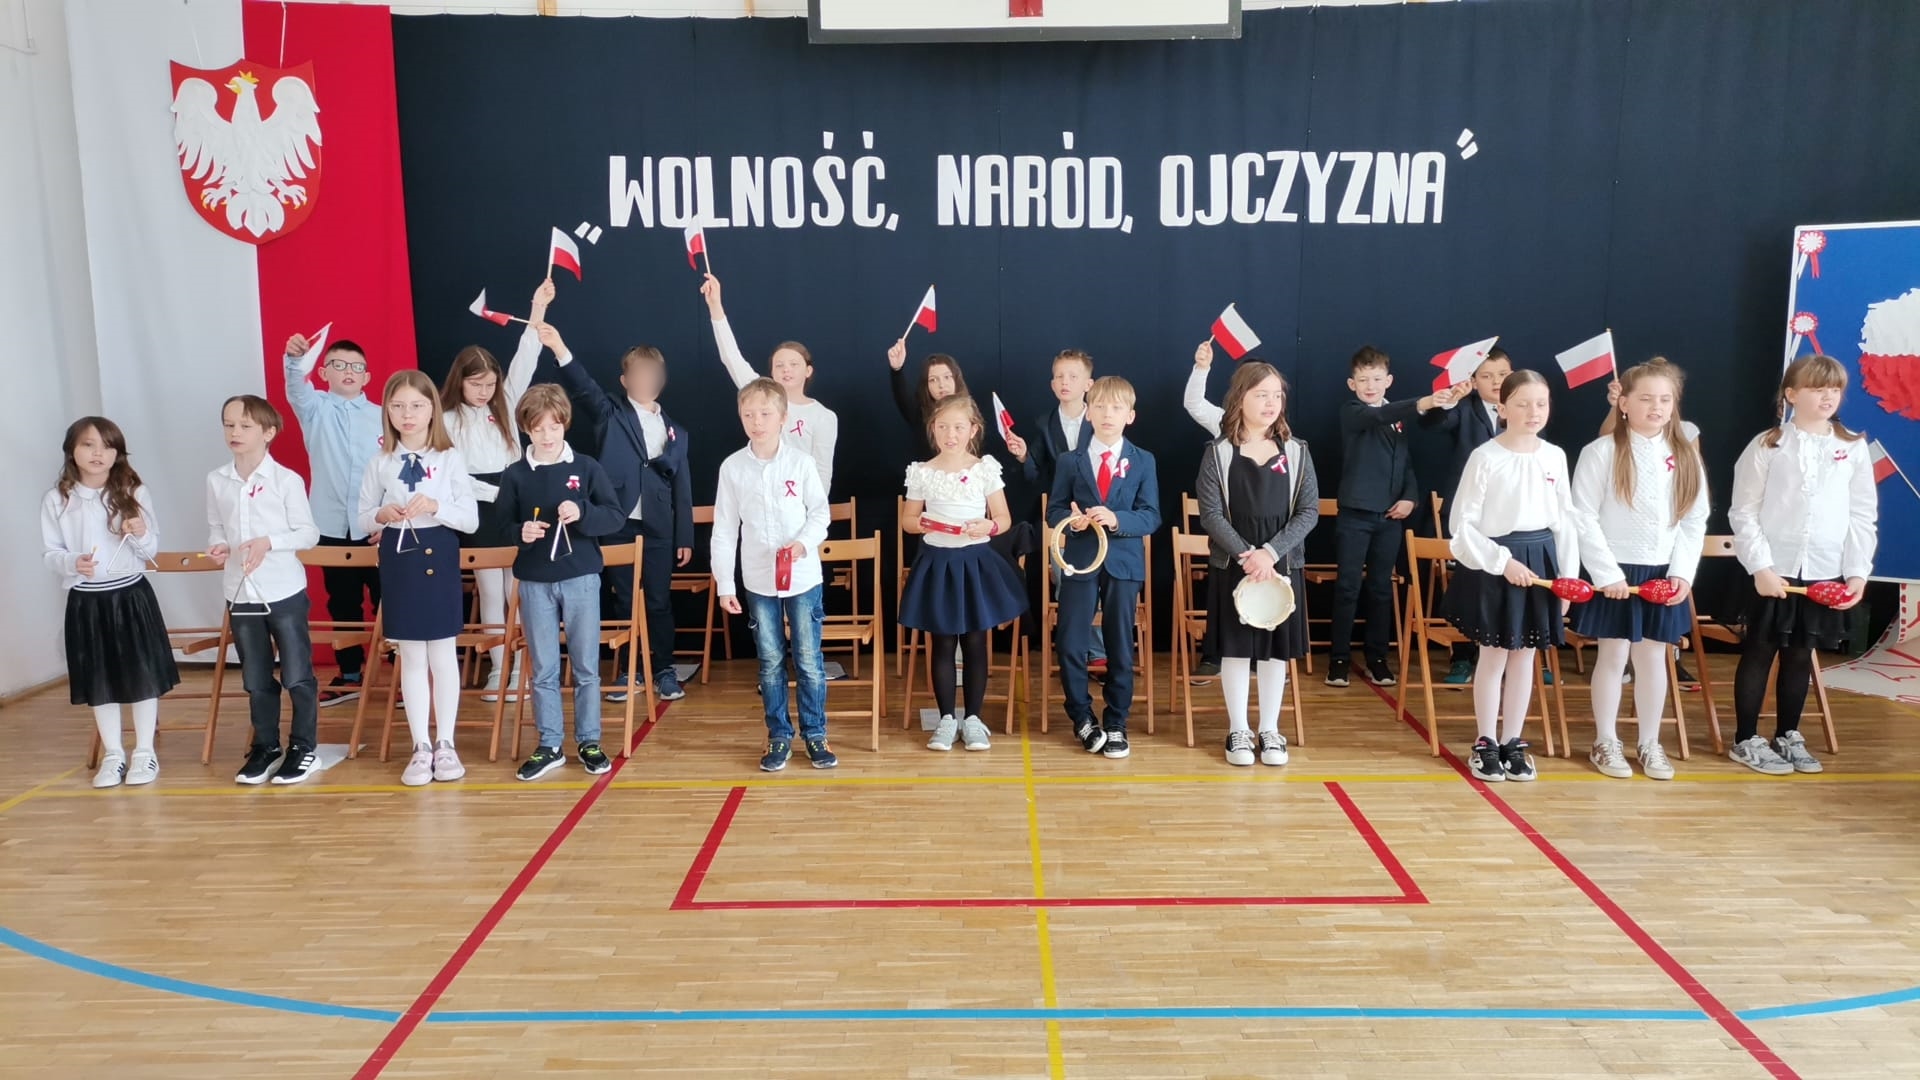 22 uczniów w dwóch rzędach. Z przodu dzieci trzymają instrumenty, rząd drugi z tyłu, dzieci machają flagami Polski. W tle dekoracja, po jej lewej stronie flaga Polski i godło, na środku napis Wolność naród ojczyna